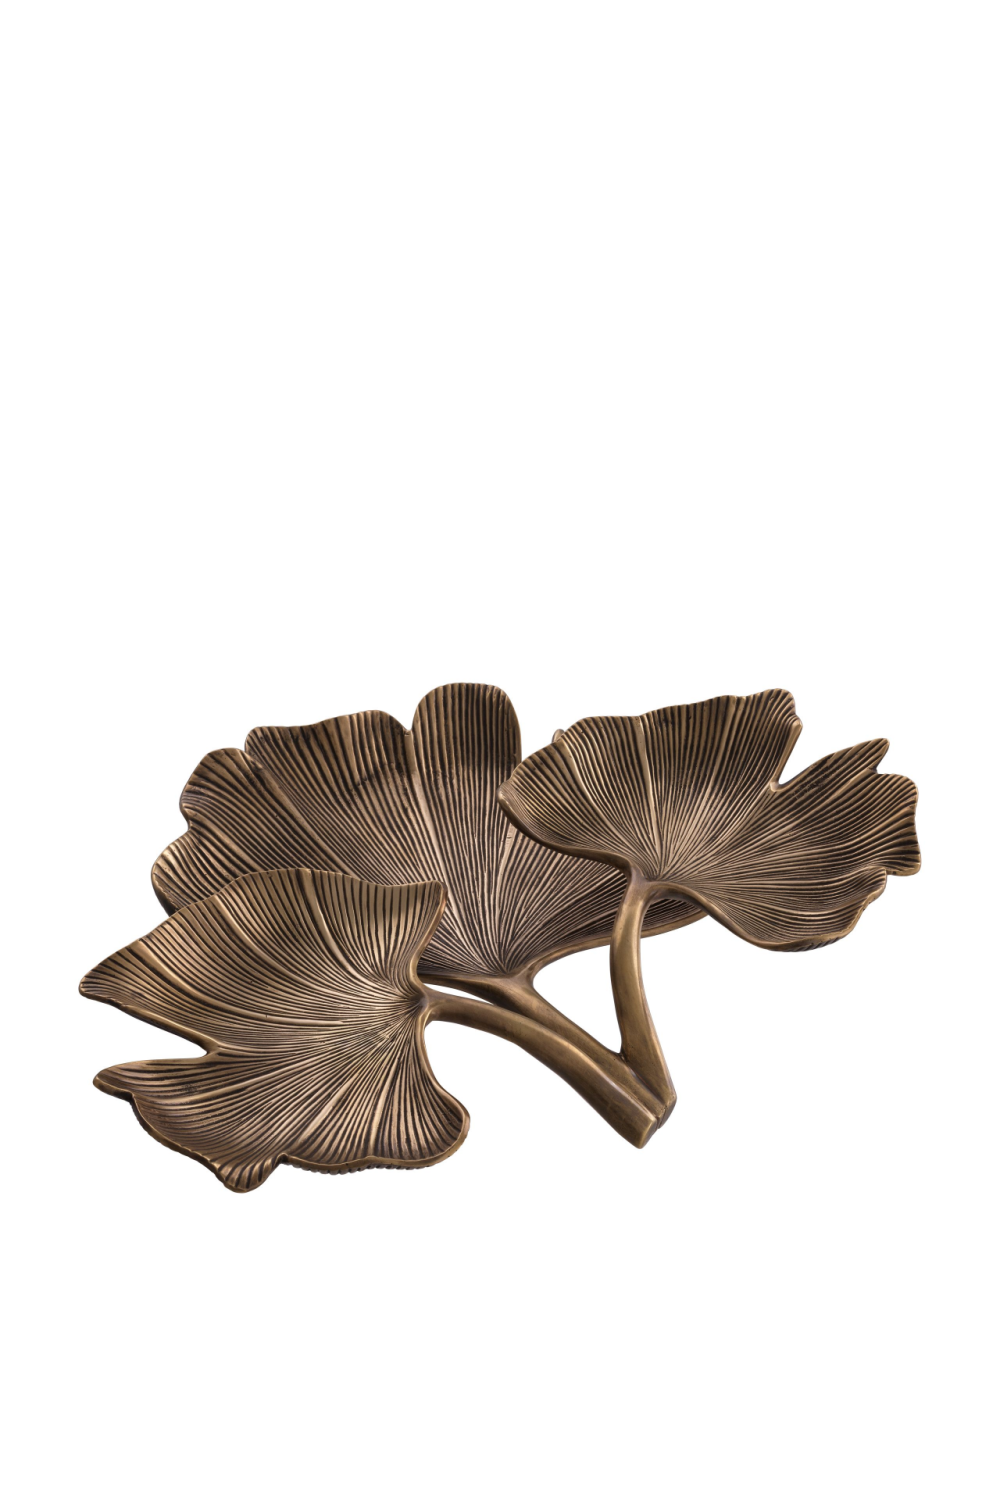 Leaf Tray | Eichholtz Ginkgo | OROA